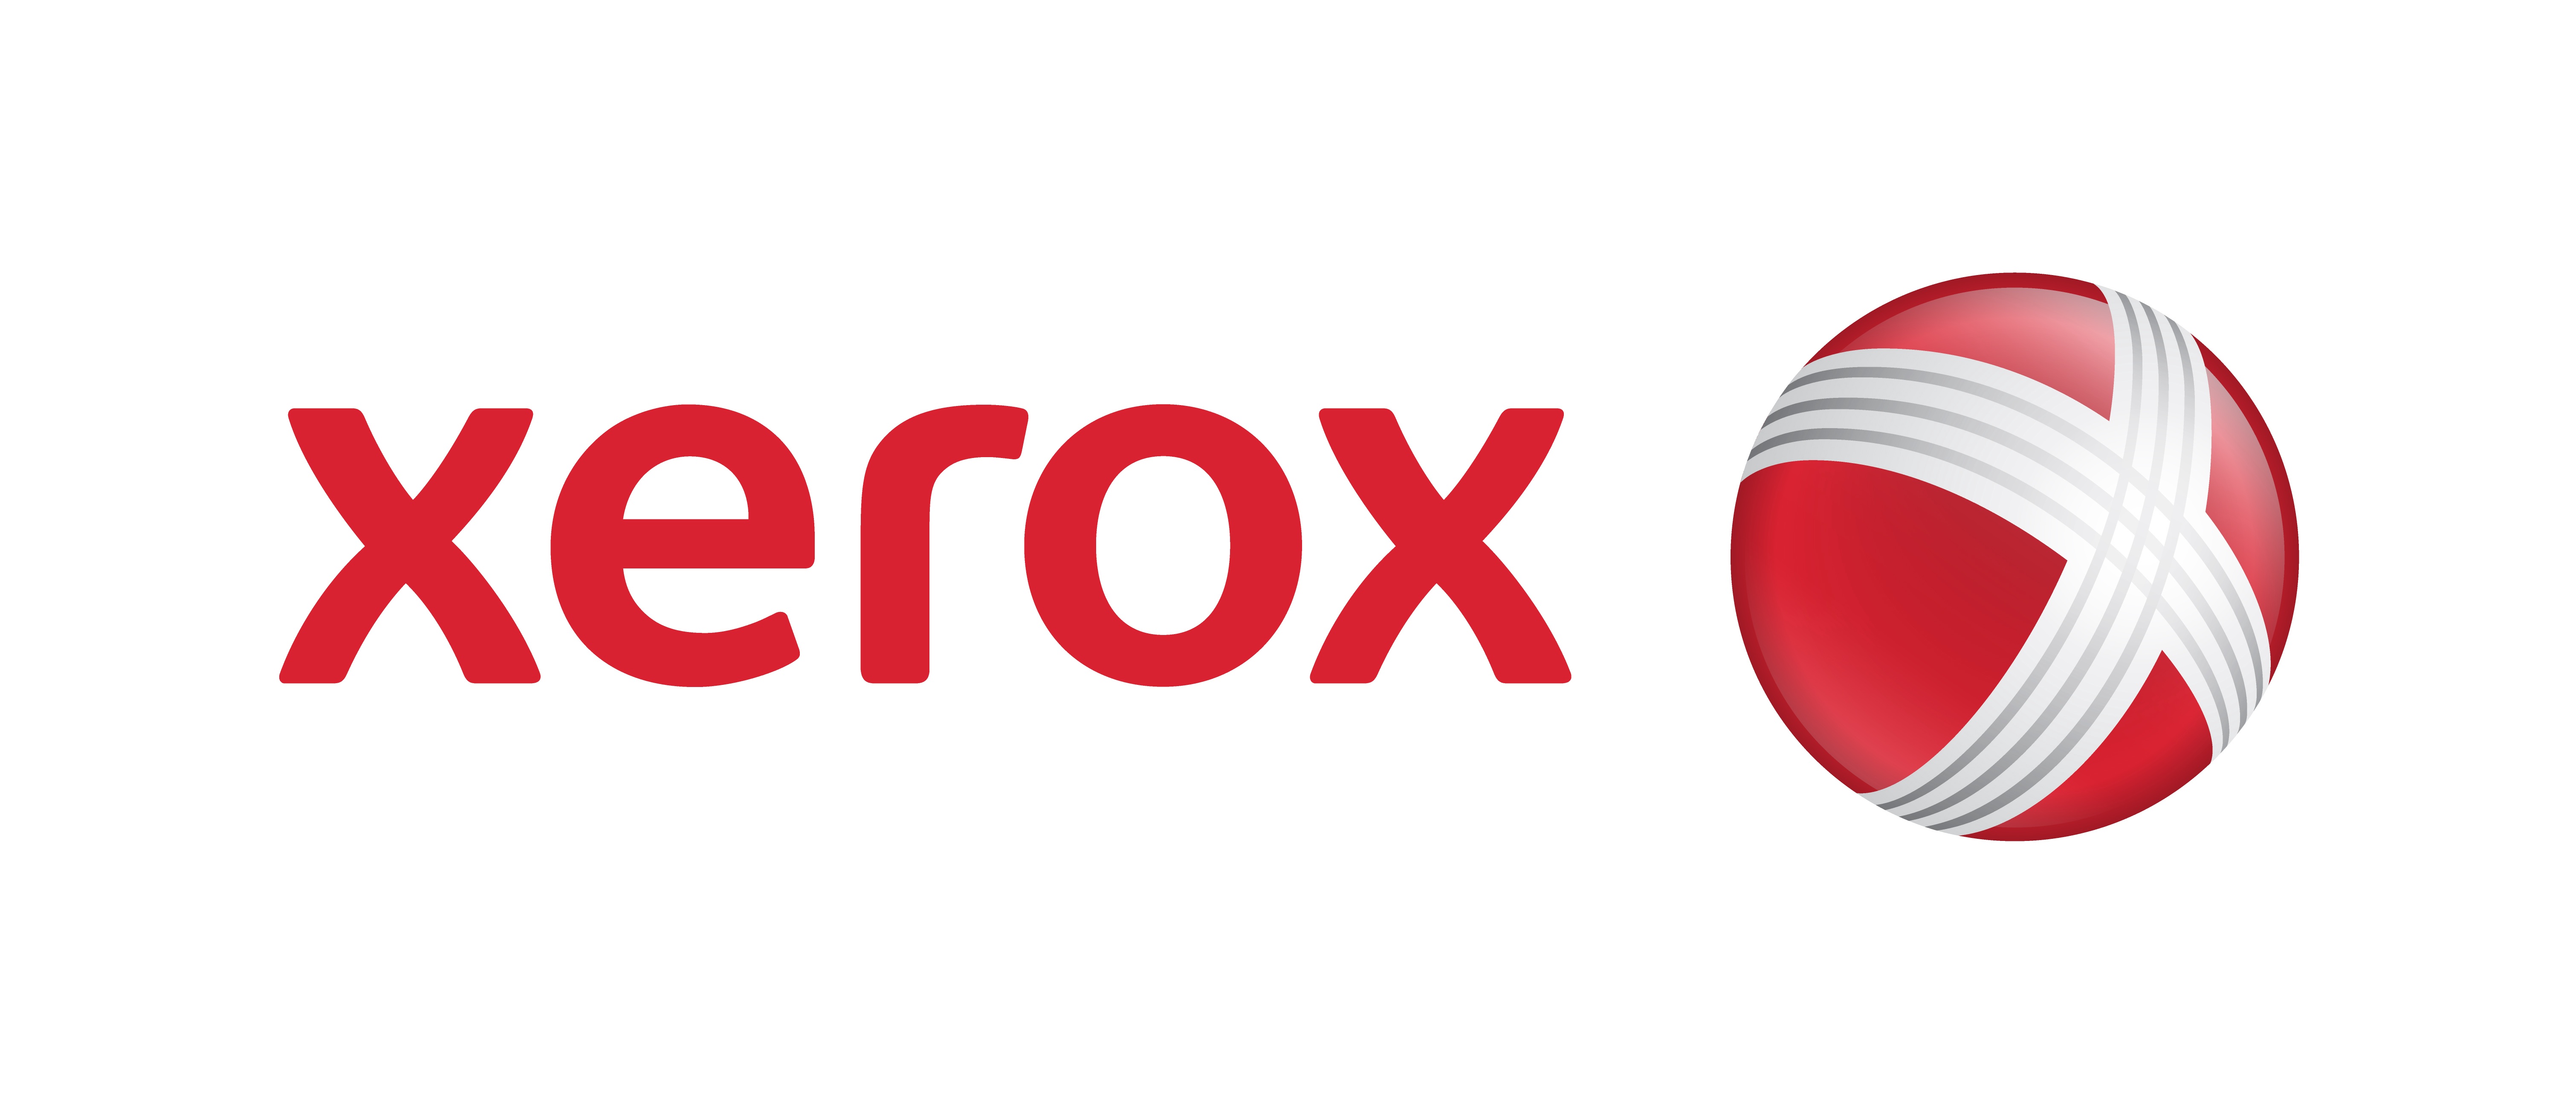 Xerox_Logo_6042x2617